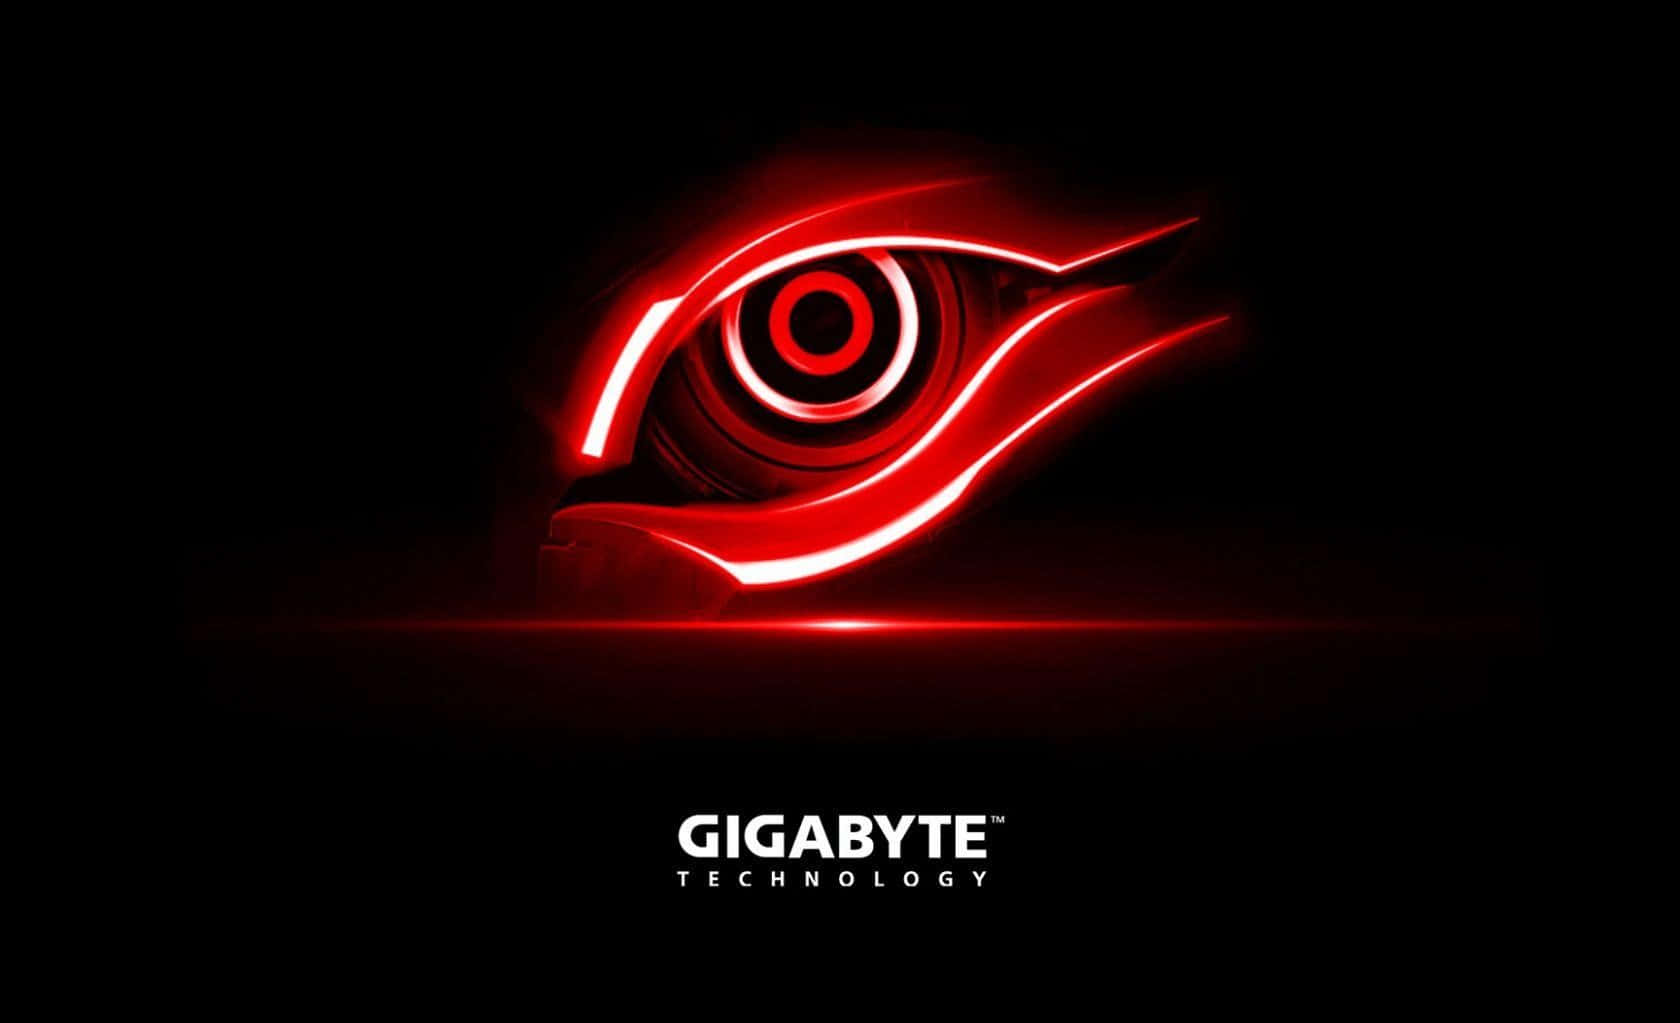 Gigabyte Technology Red Eye Logo Wallpaper